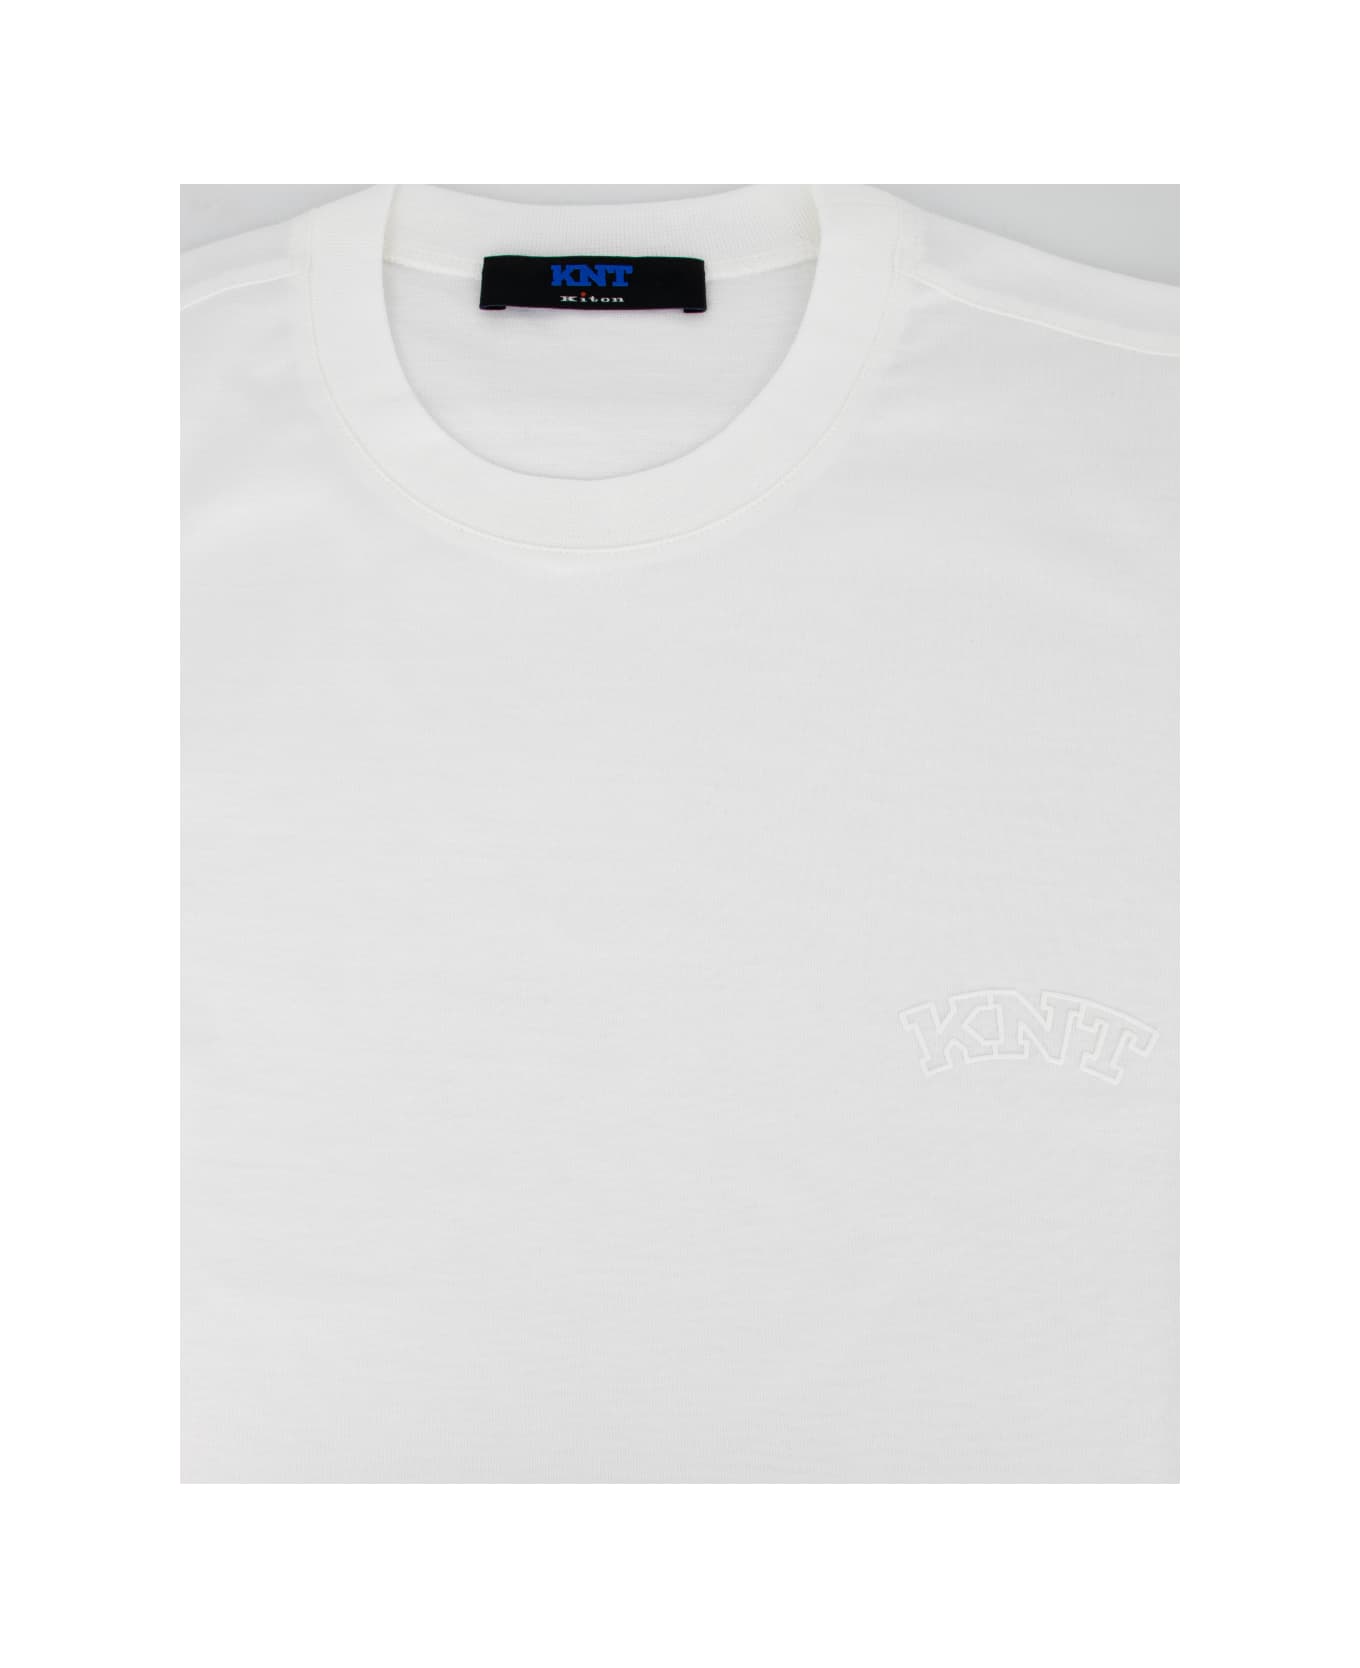 Kiton T-shirt - WHITE シャツ